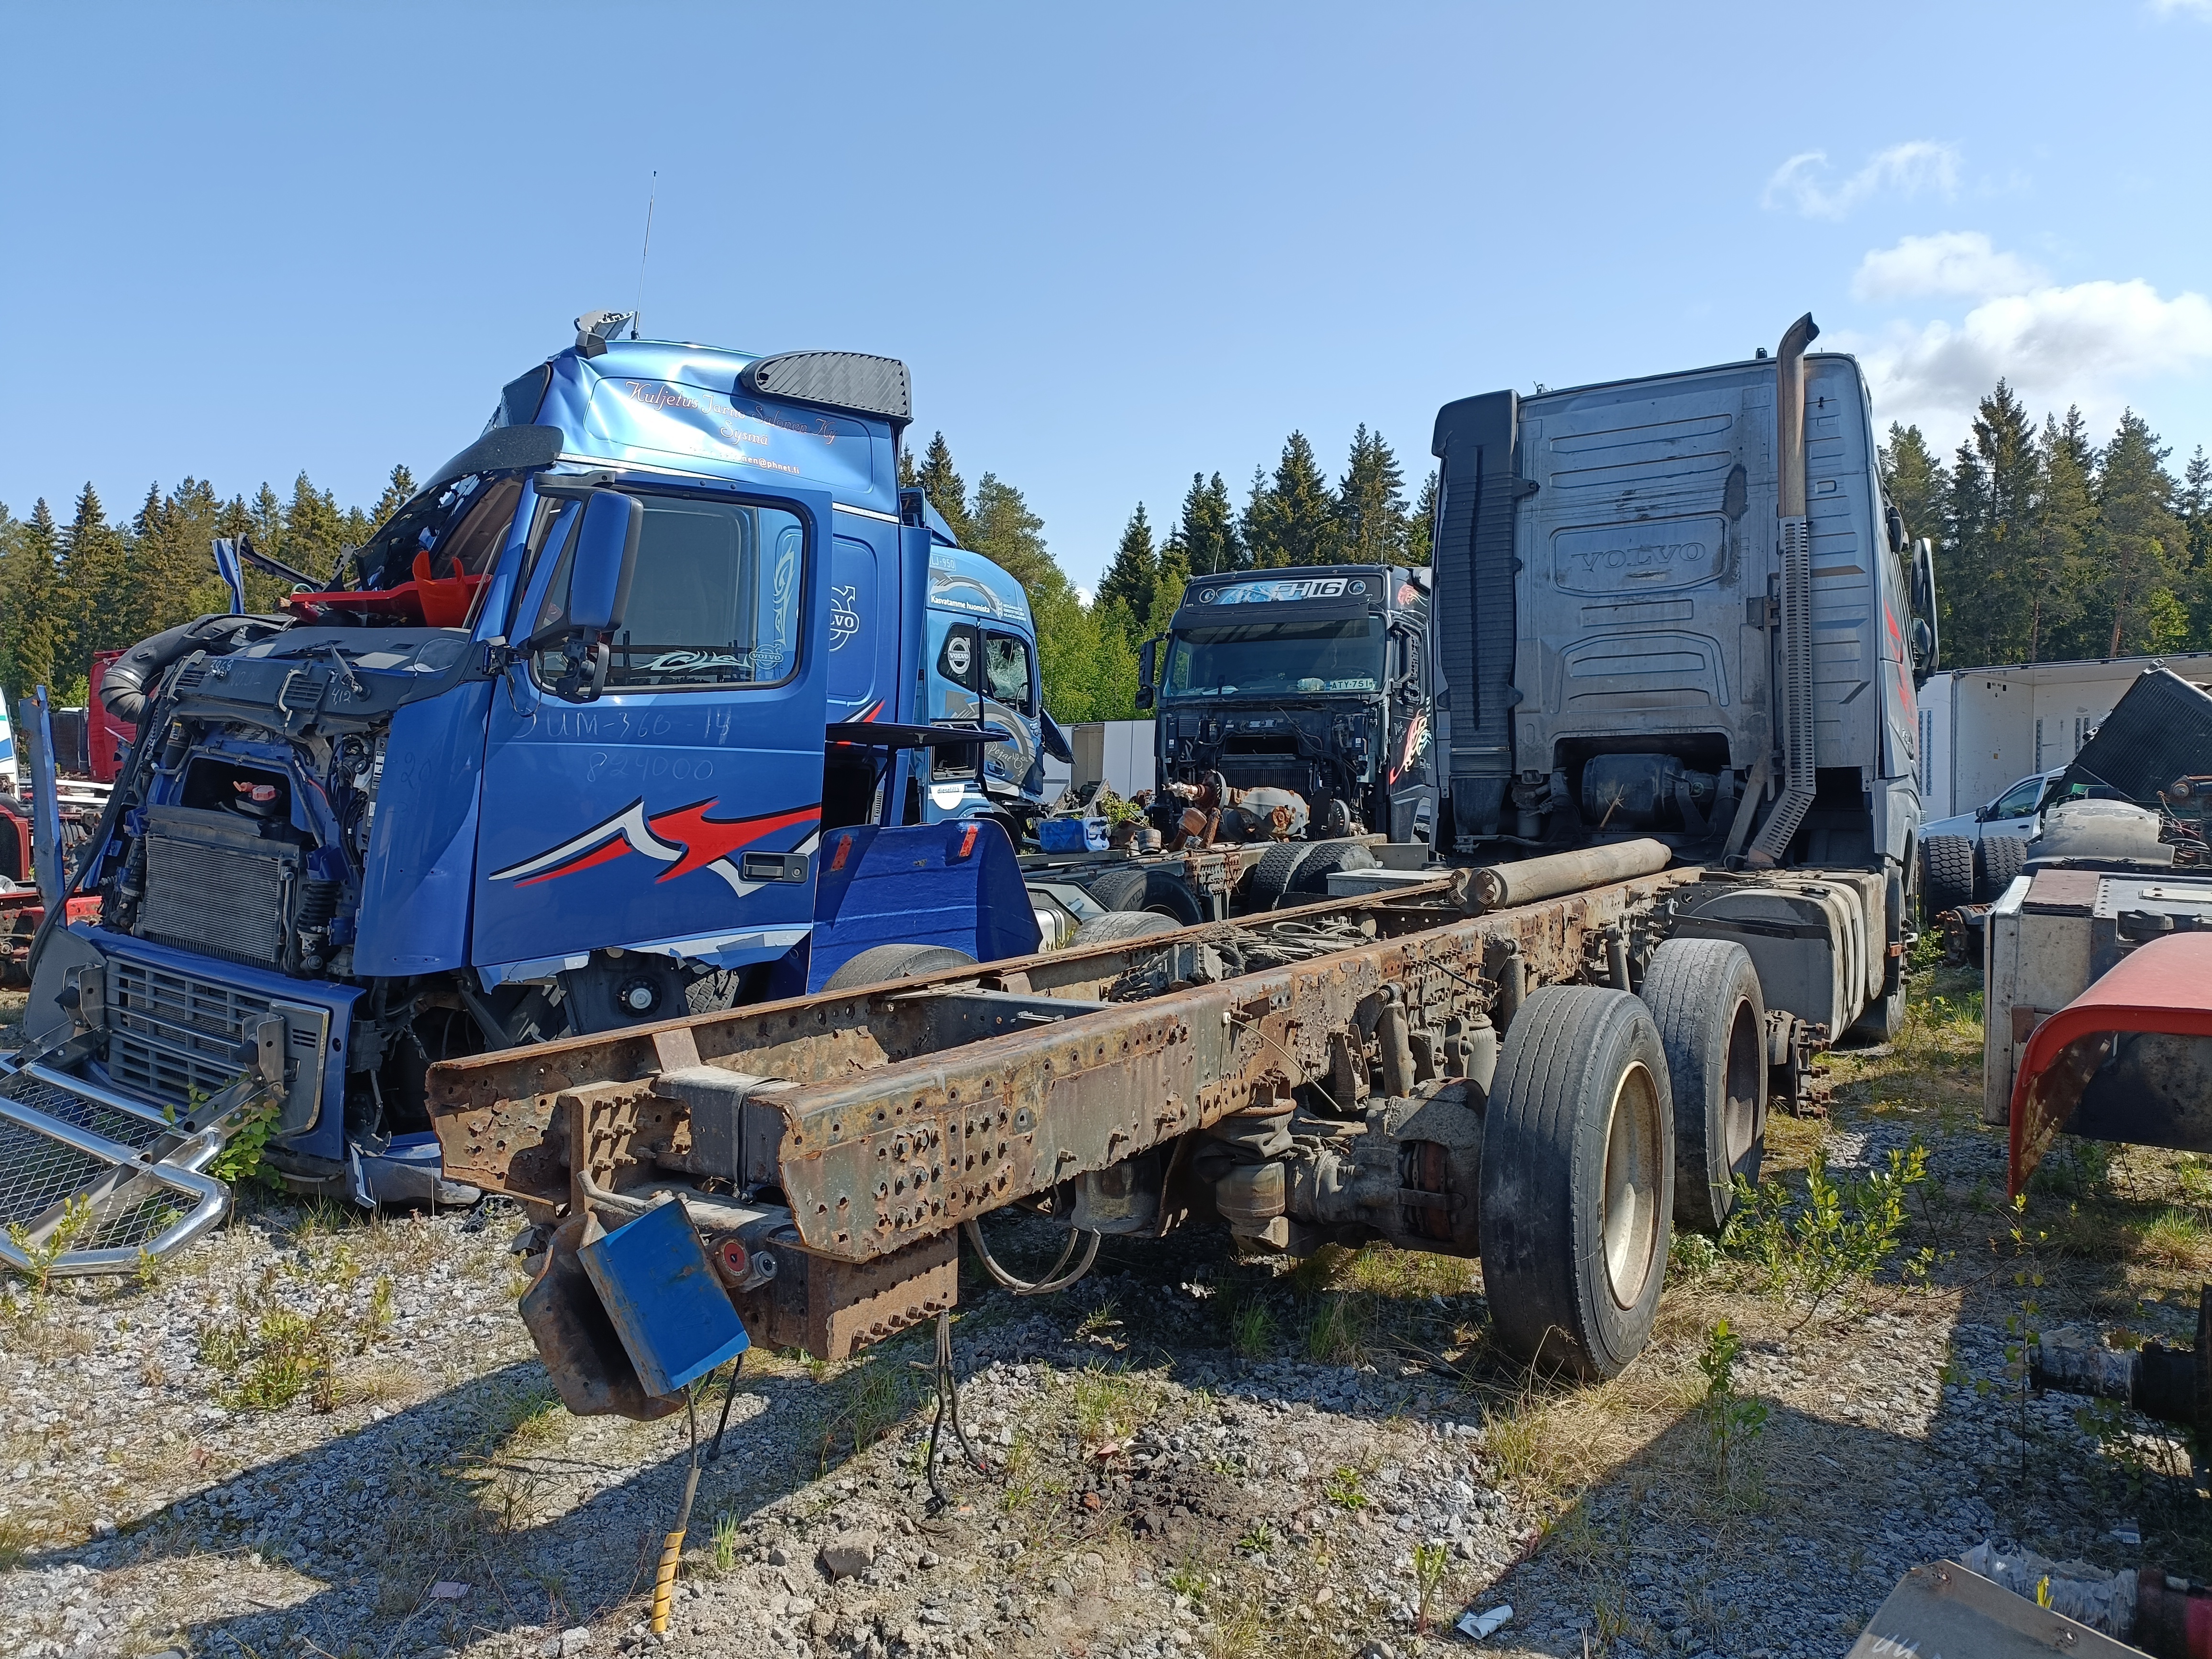 Dépanneuse PL Volvo FH16 650 Rotator 2016 - VENDU - GMP Truck Distribution